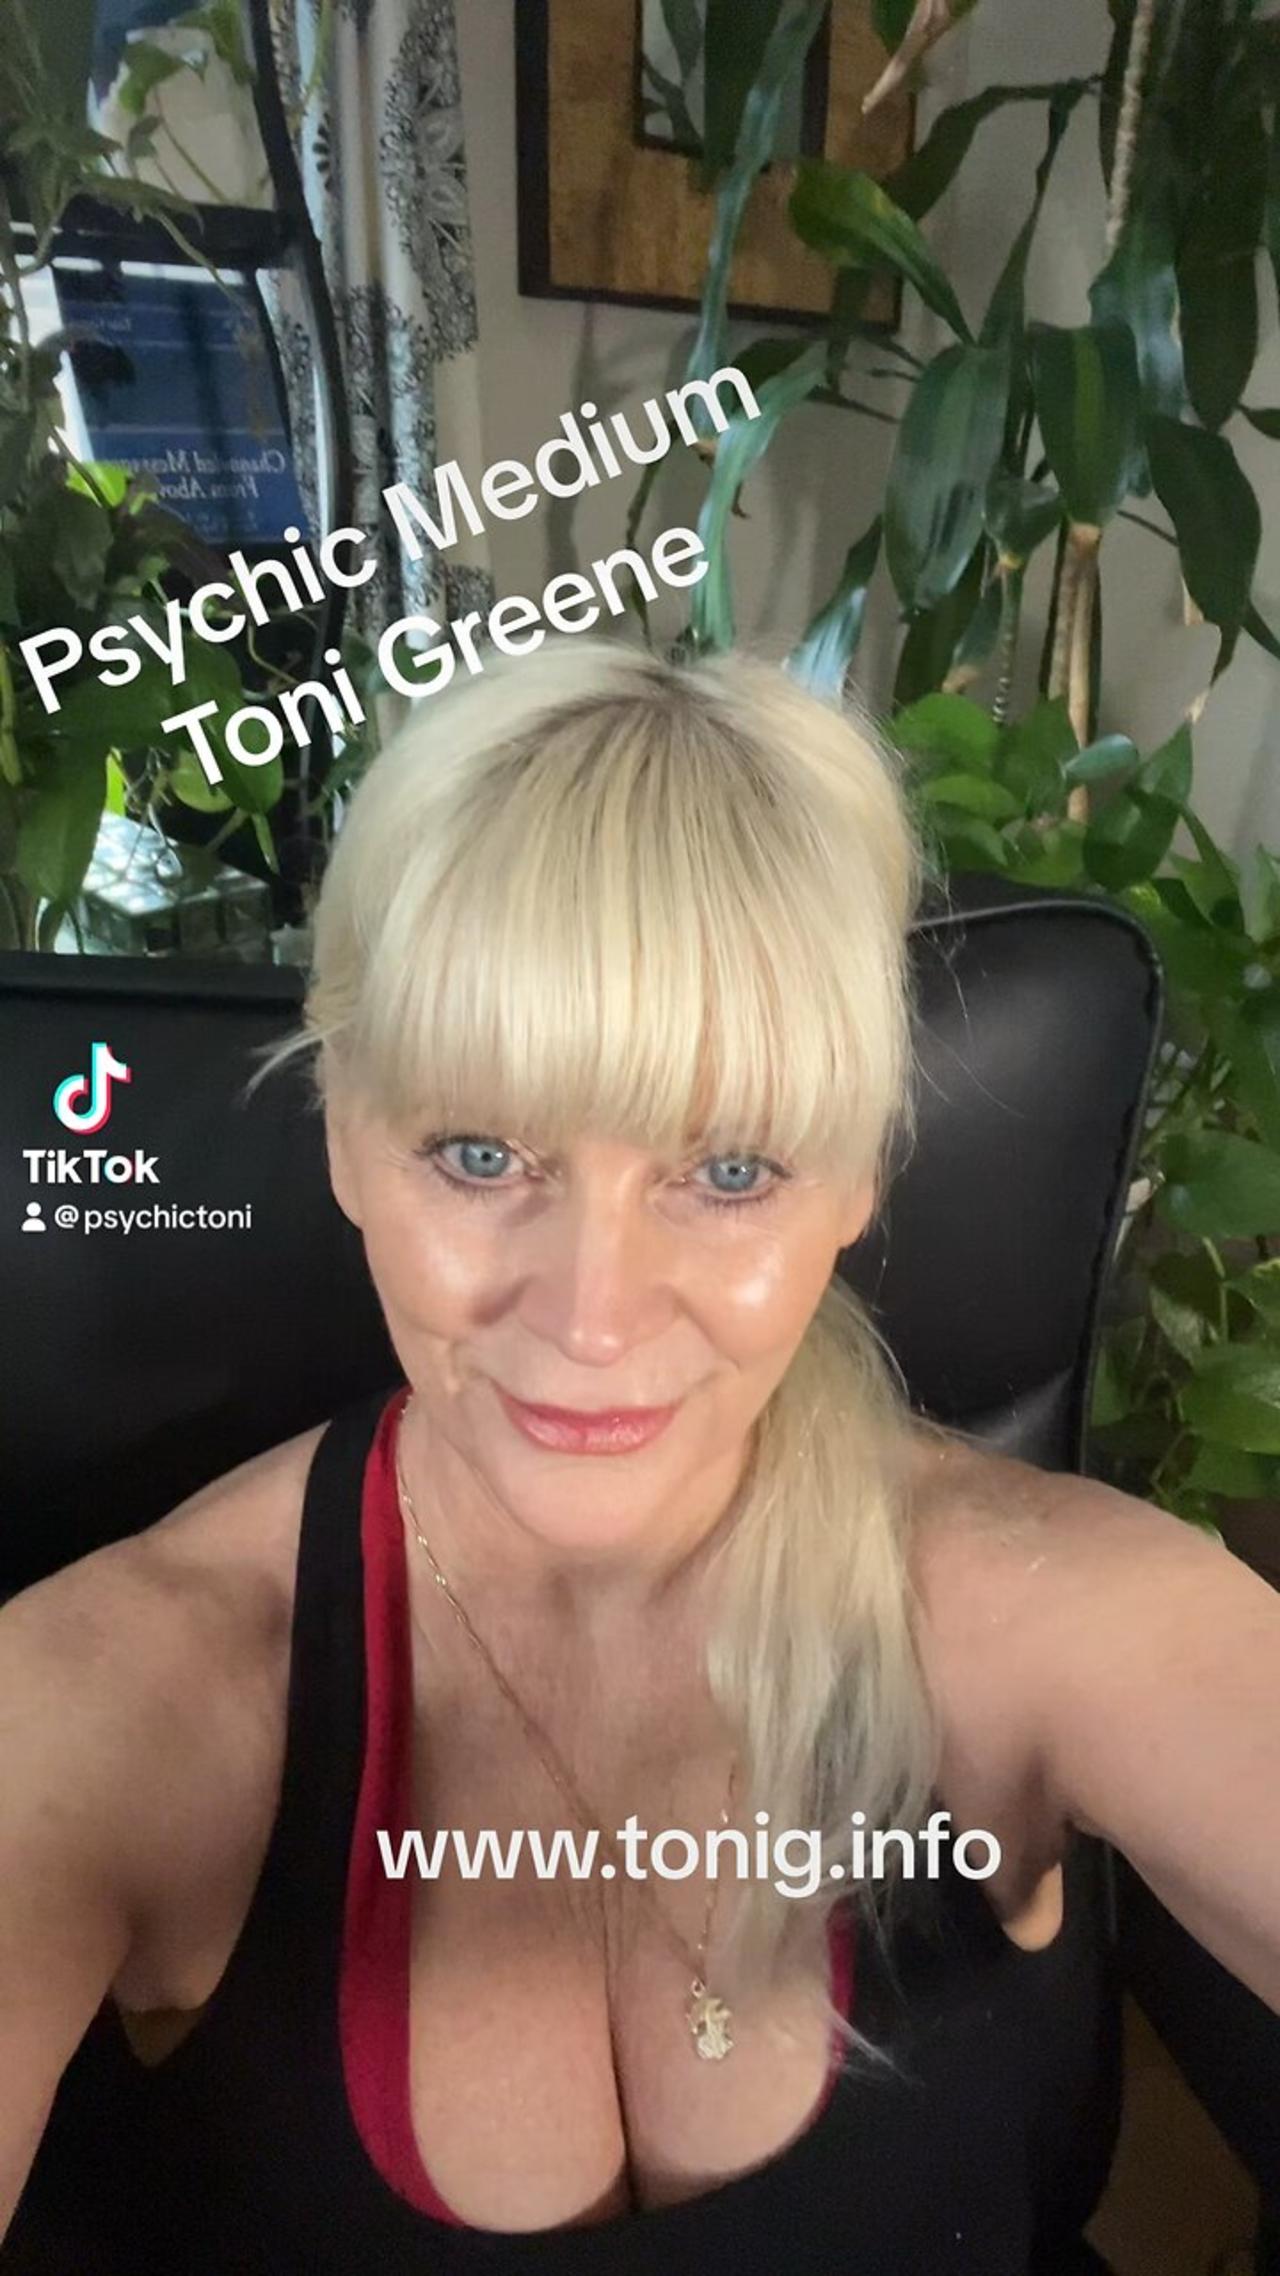 Psychic, medium, Toni Greene